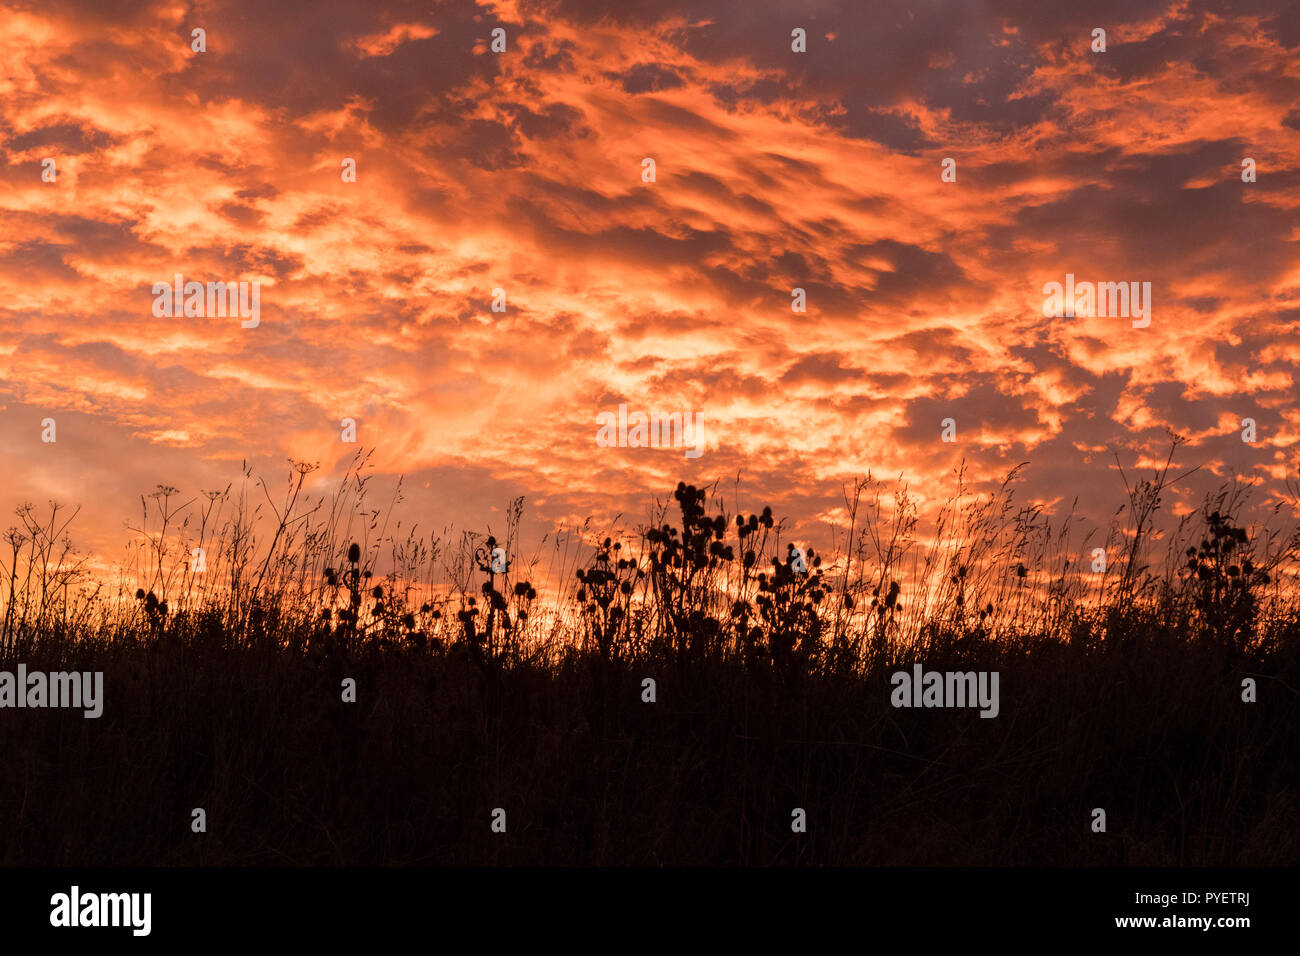 Sonnenuntergang Himmel mit Silhouetten Gräser und seedheads im Vordergrund - Großbritannien Stockfoto